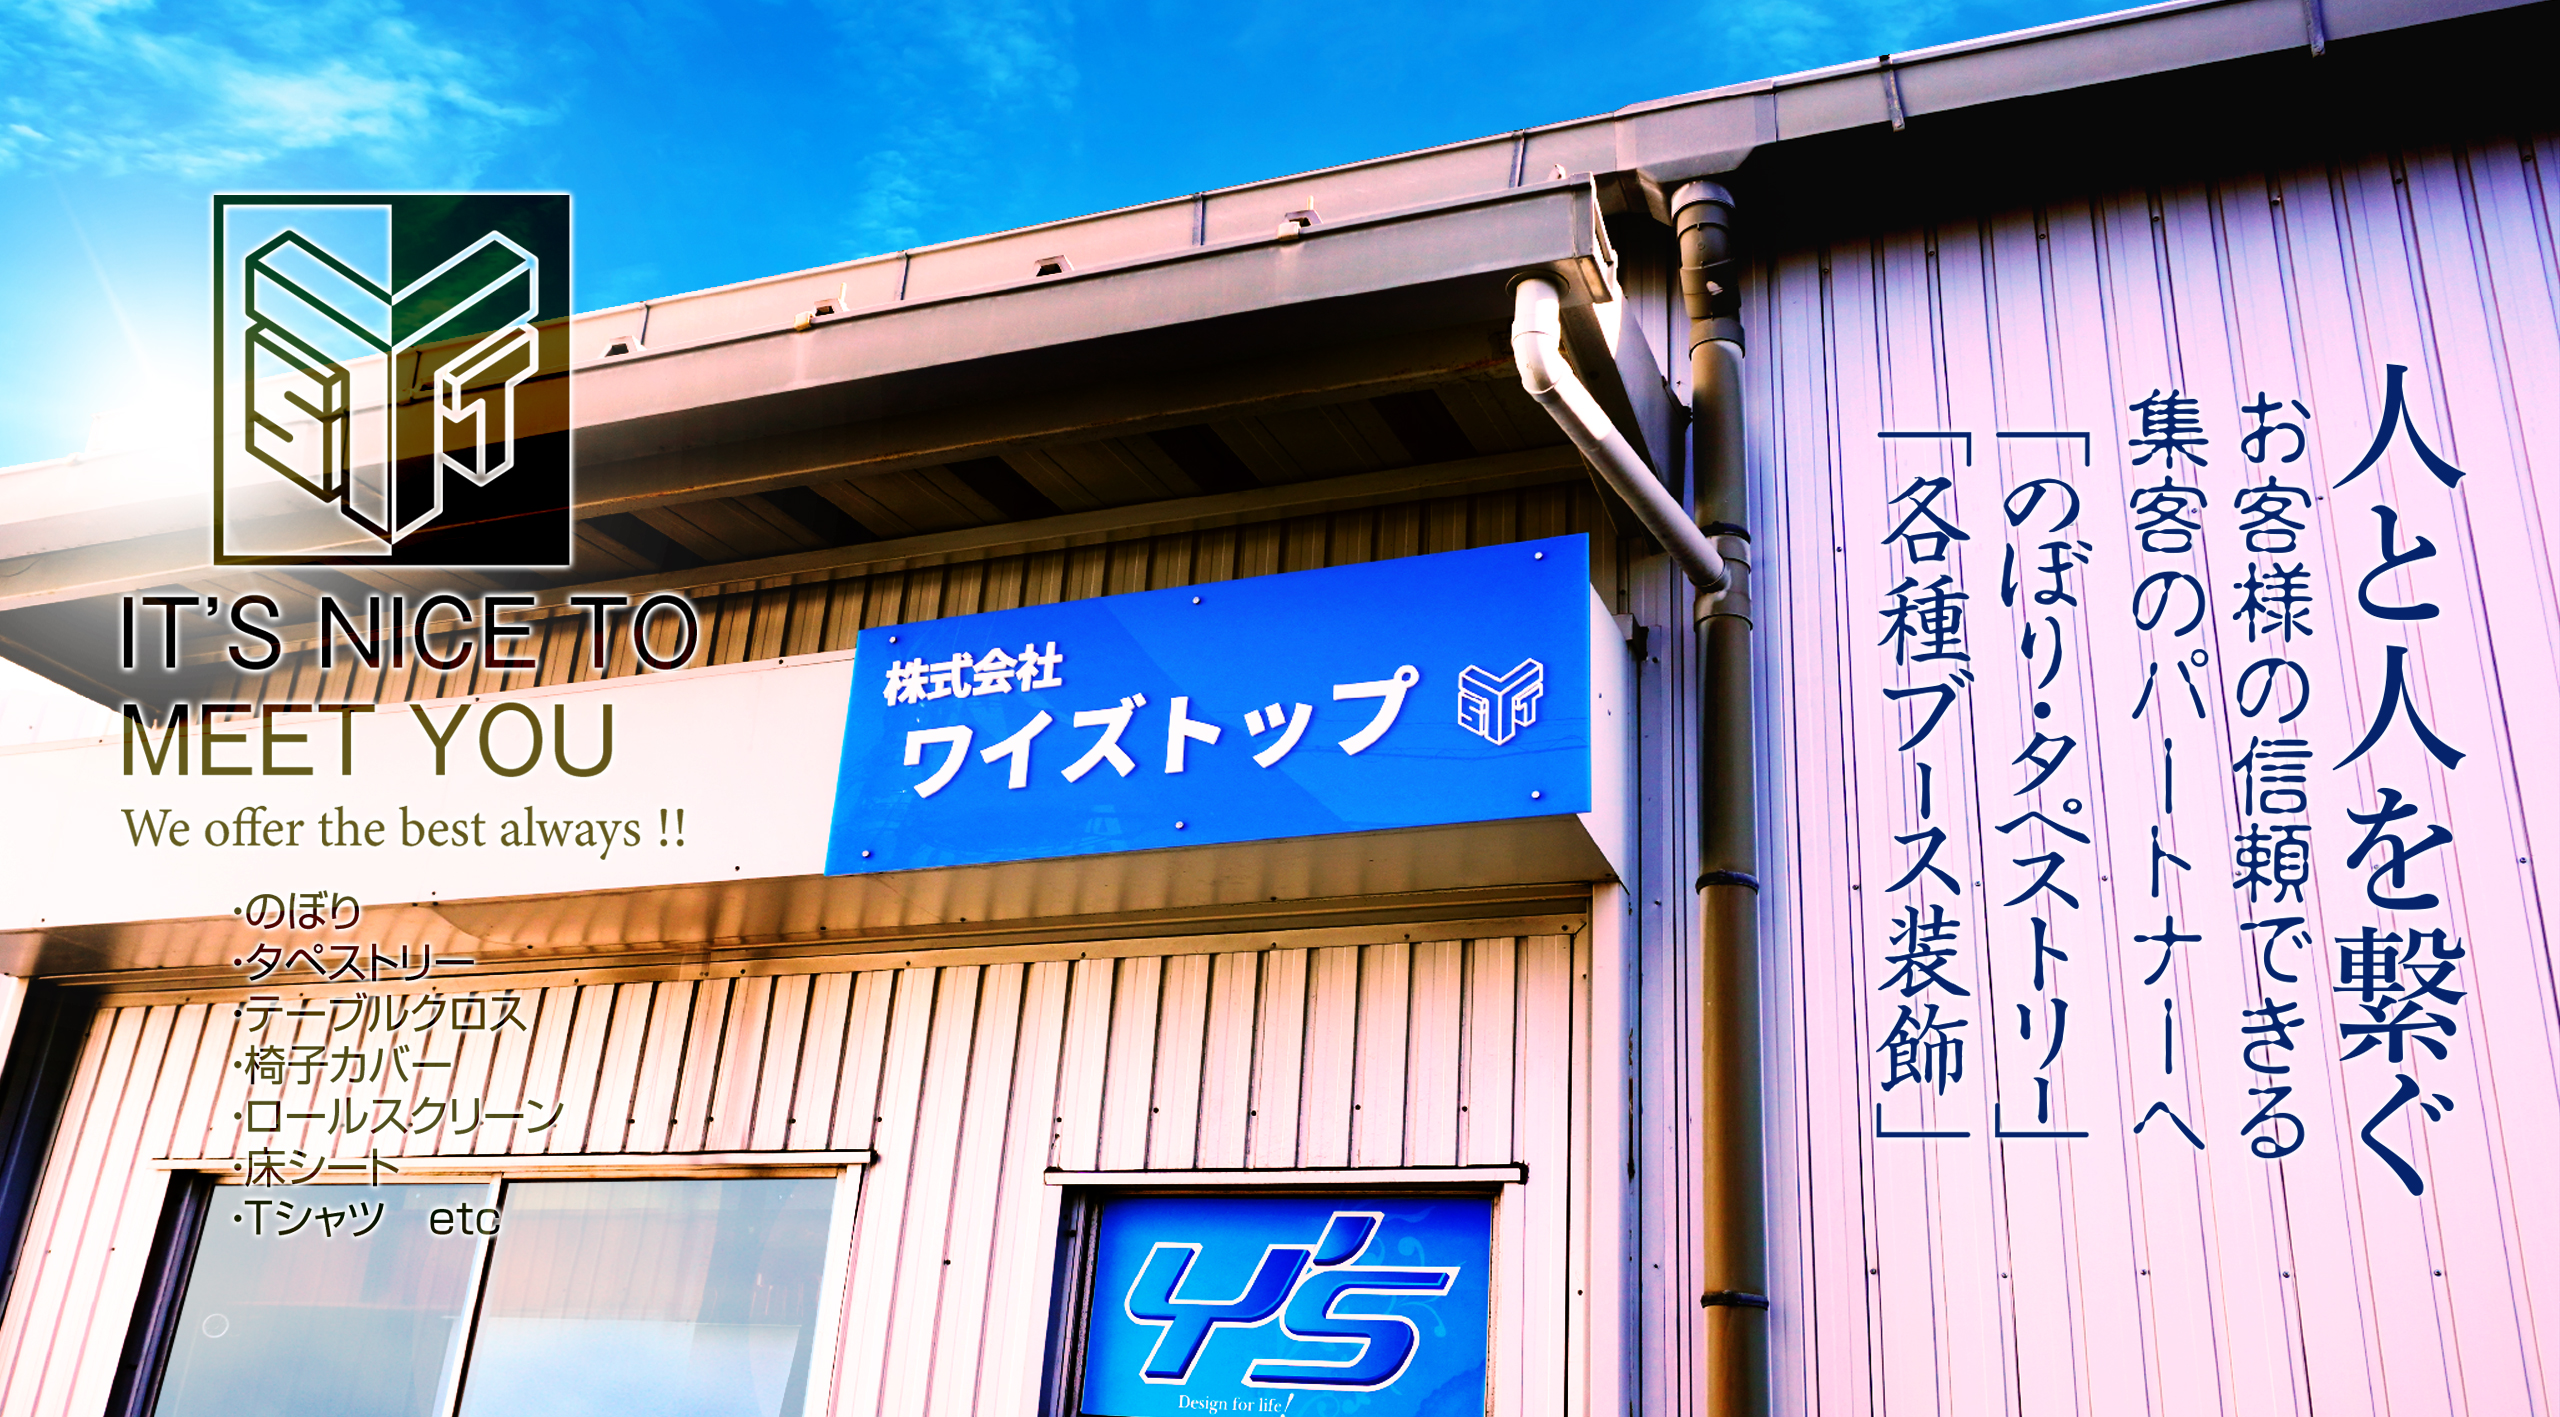 愛知県名古屋の、のぼり・タペストリー・横断幕を販売するワイズトップ